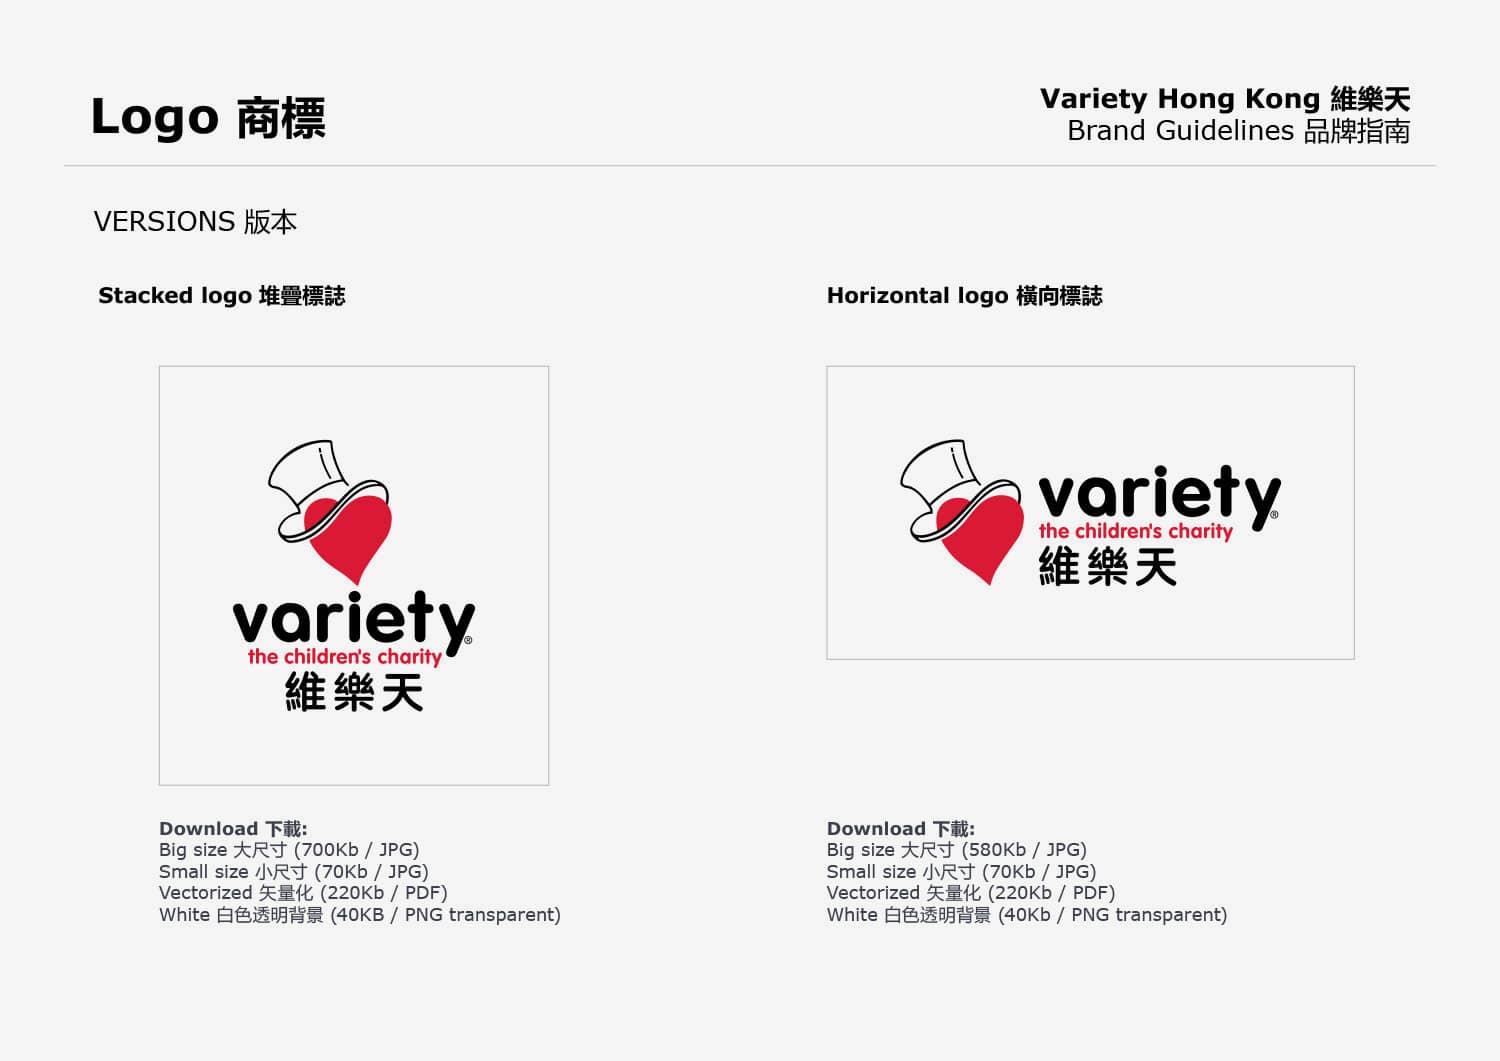 Variety-HK-guidelines-2021-15